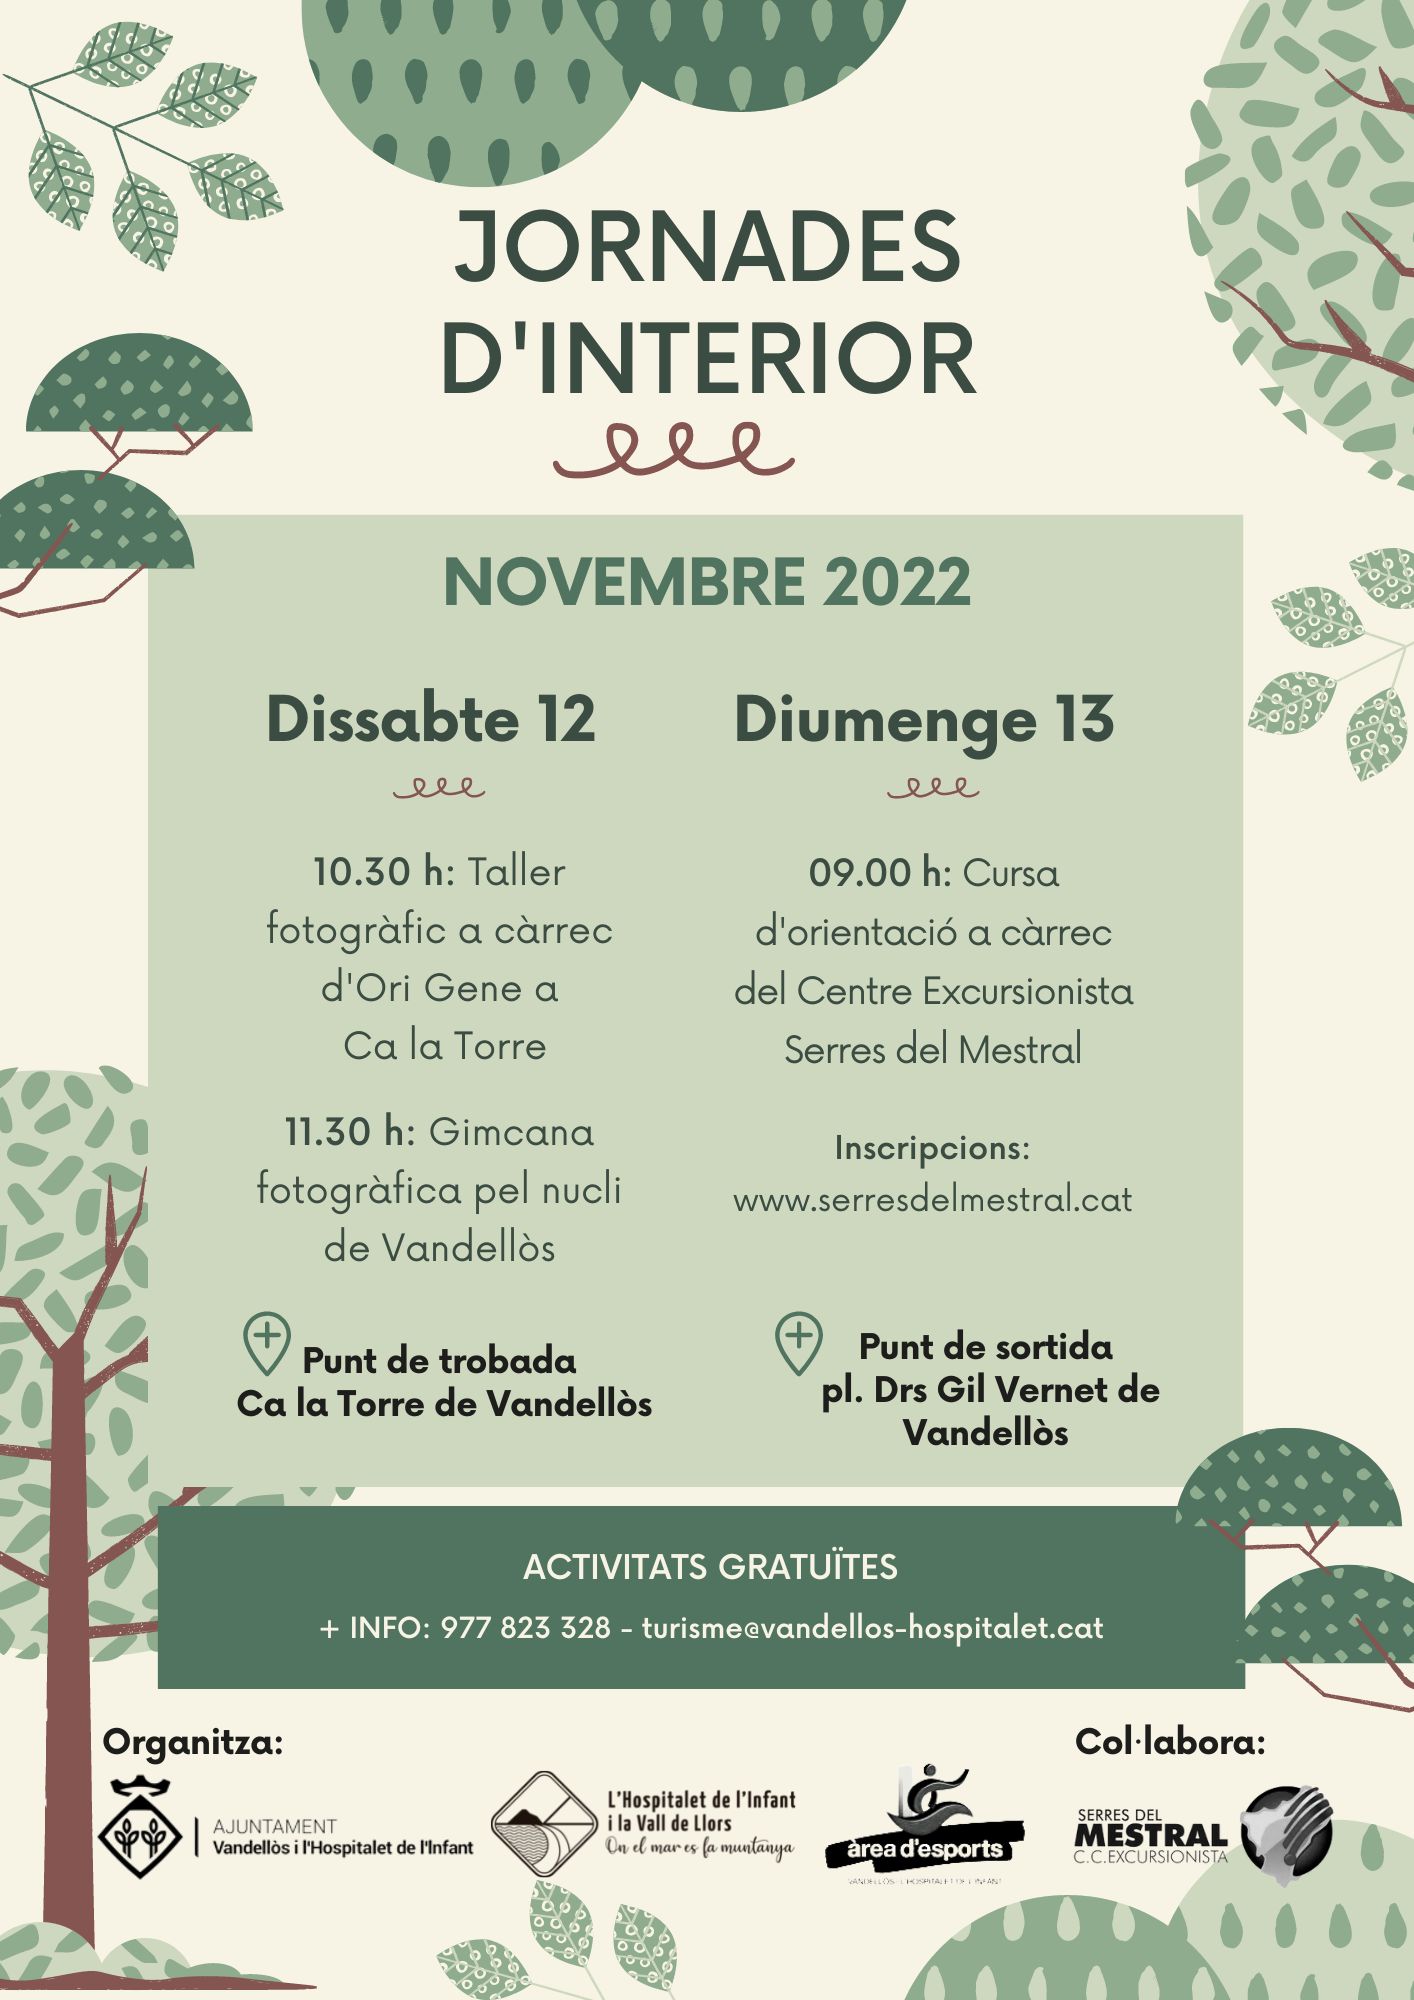 Les Jornades d’Interior se celebraran el cap de setmana del 12 i 13 de novembre a Vandellòs